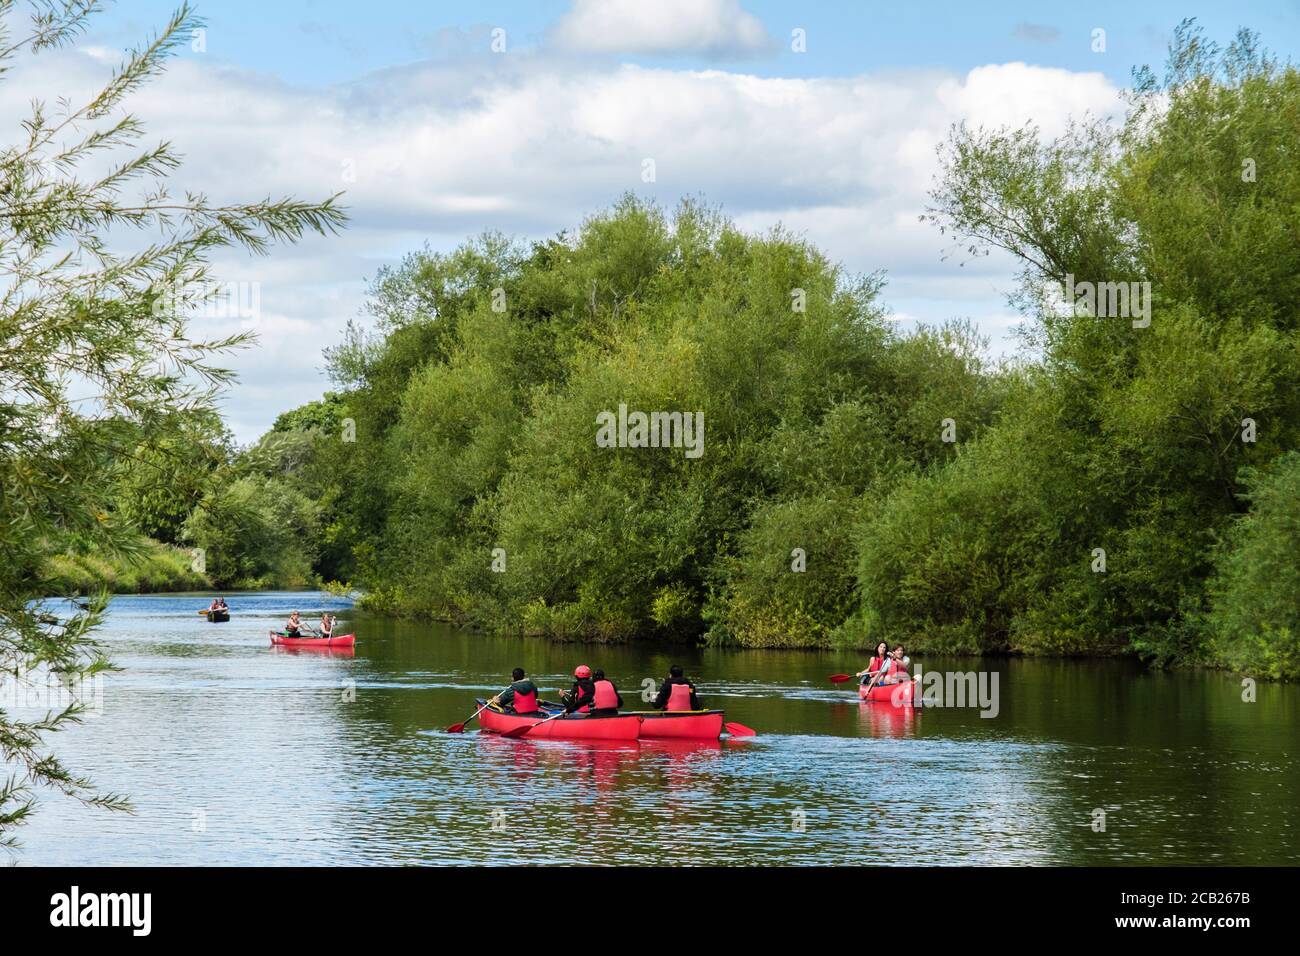 Les gens font du canoë sur la rivière Wye dans la forêt de Dean en été à Symonds Yat West, Herefordshire, Angleterre, Royaume-Uni, Grande-Bretagne Banque D'Images